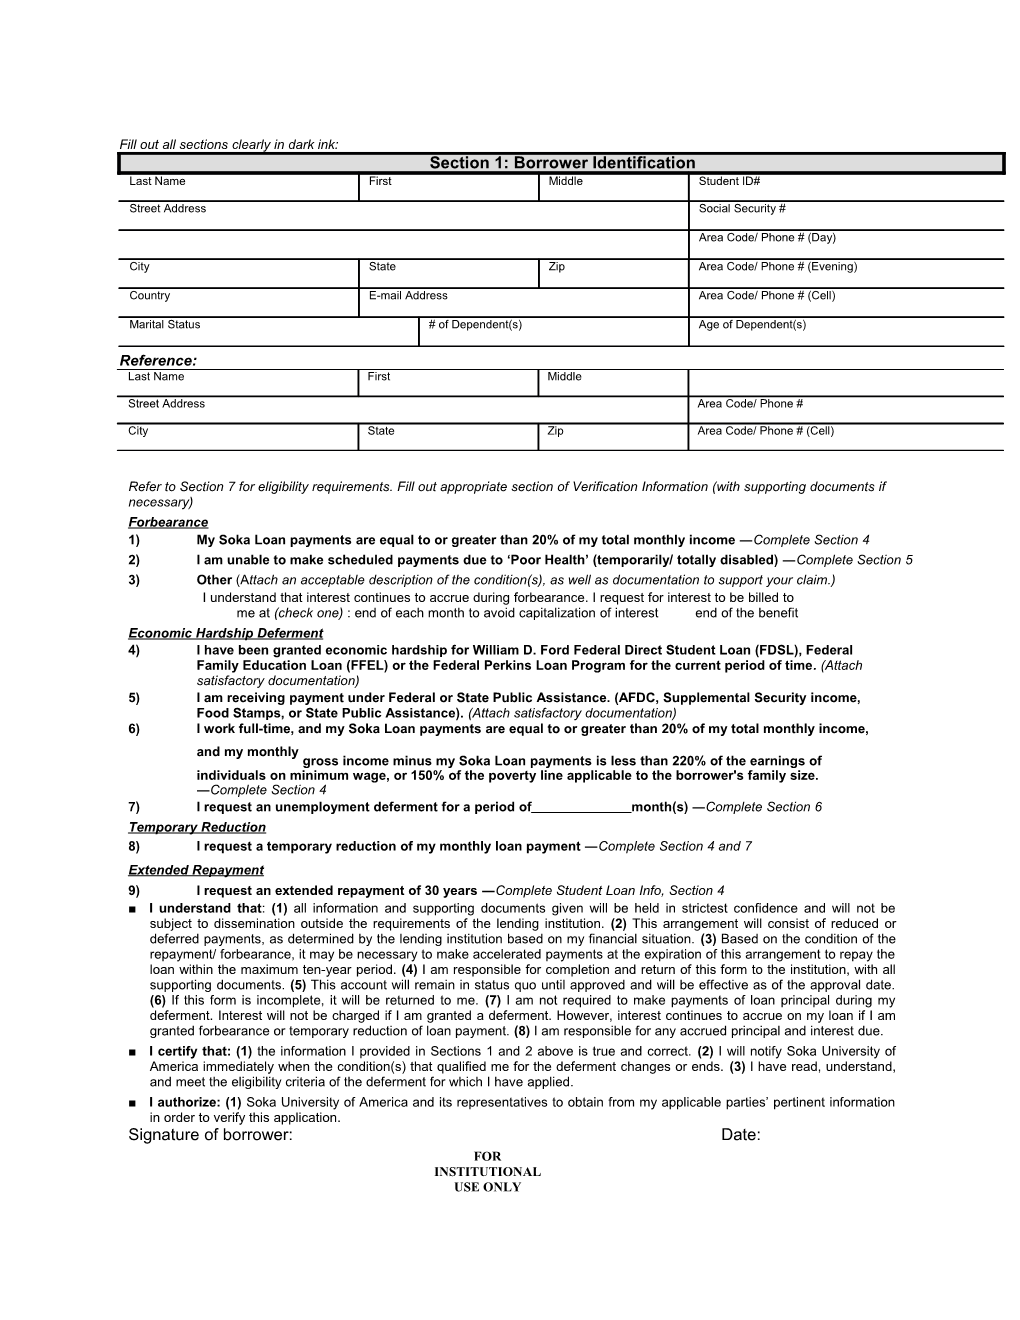 SUA Loan Forbearance Form Revised 4-1-08